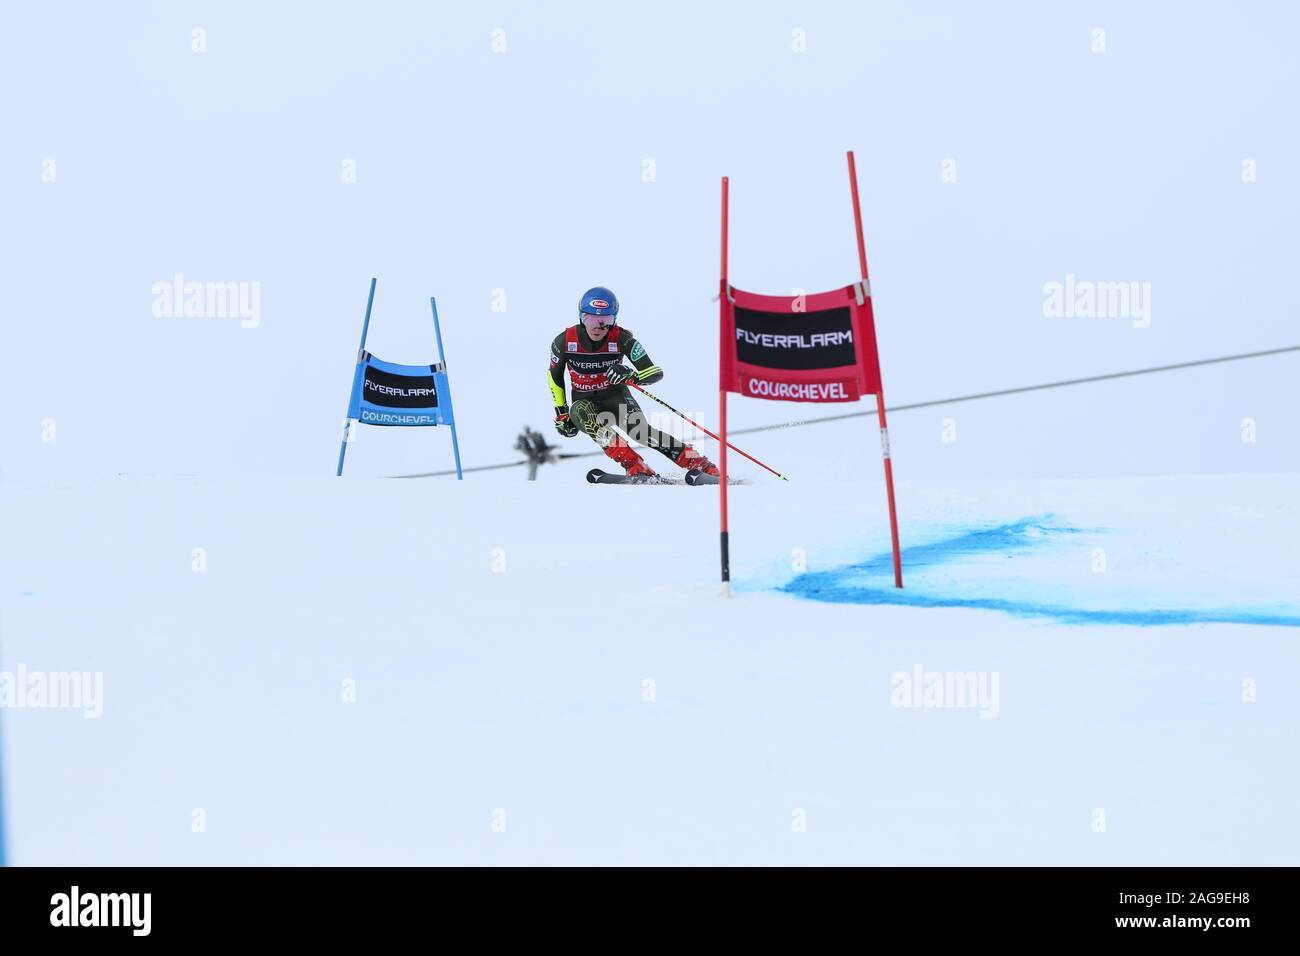 Courchevel Frankreich Dec 17 2019 Mikaela Shiffrin der USA konkurrieren im Riesenslalom der Frauen Audi FIS Alpine Ski World Cup 2019/20 Skifahren Wintersport Stockfoto